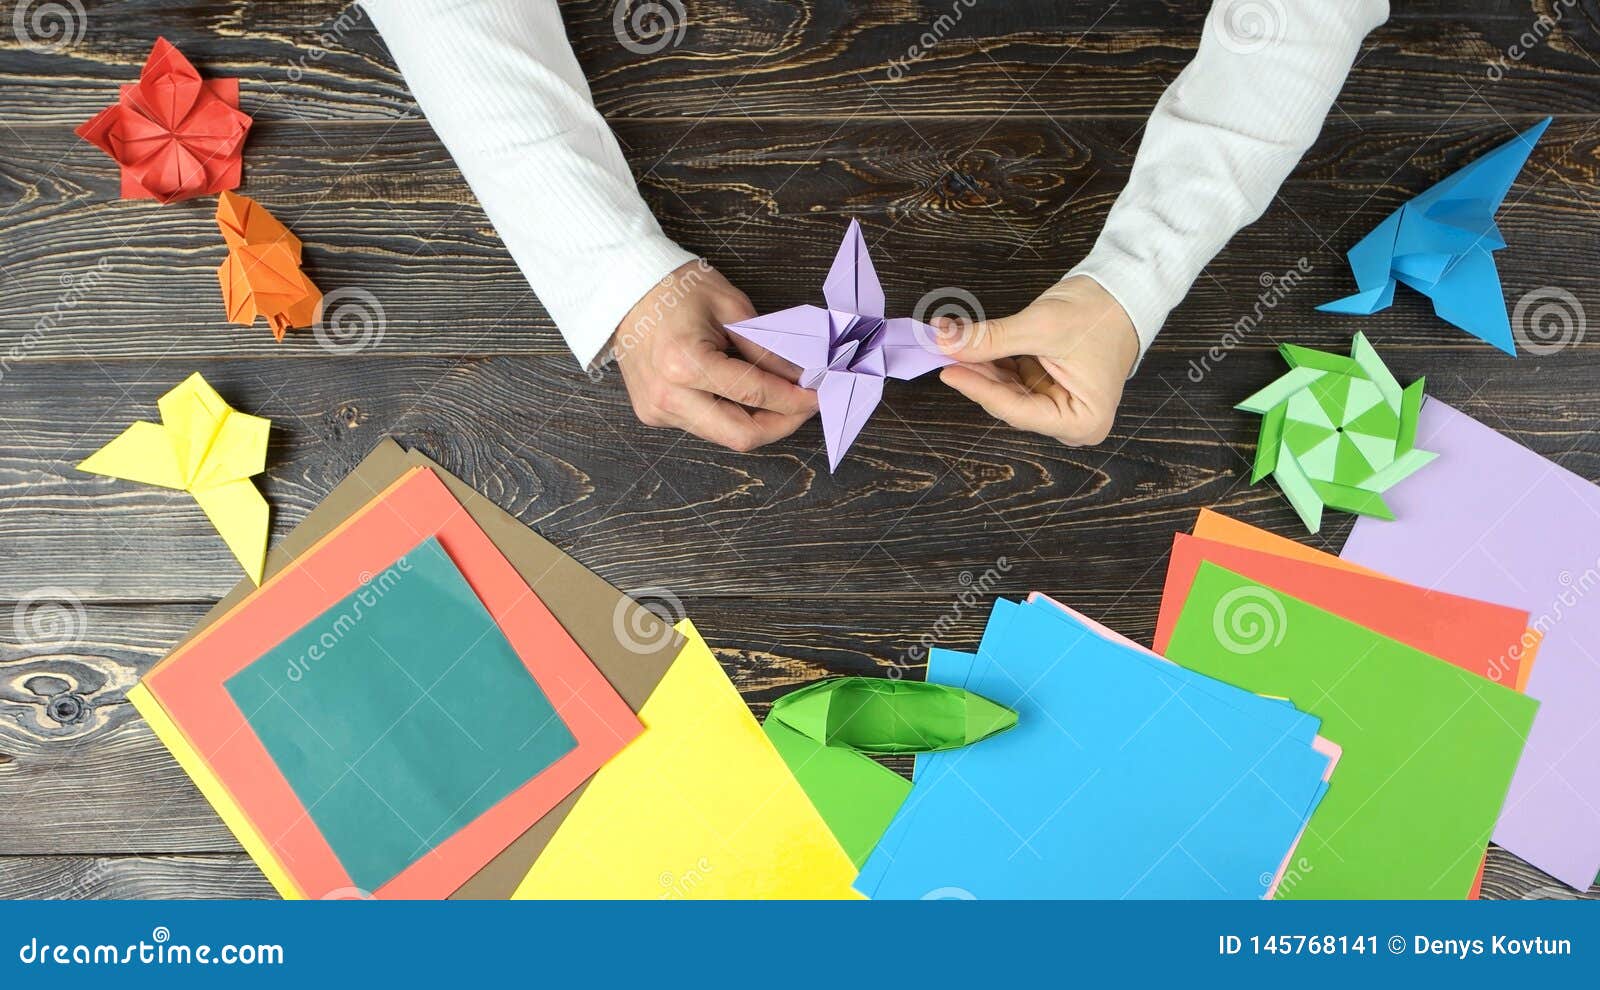  quipe  Des Mains Faisant La Fleur D origami Image stock 